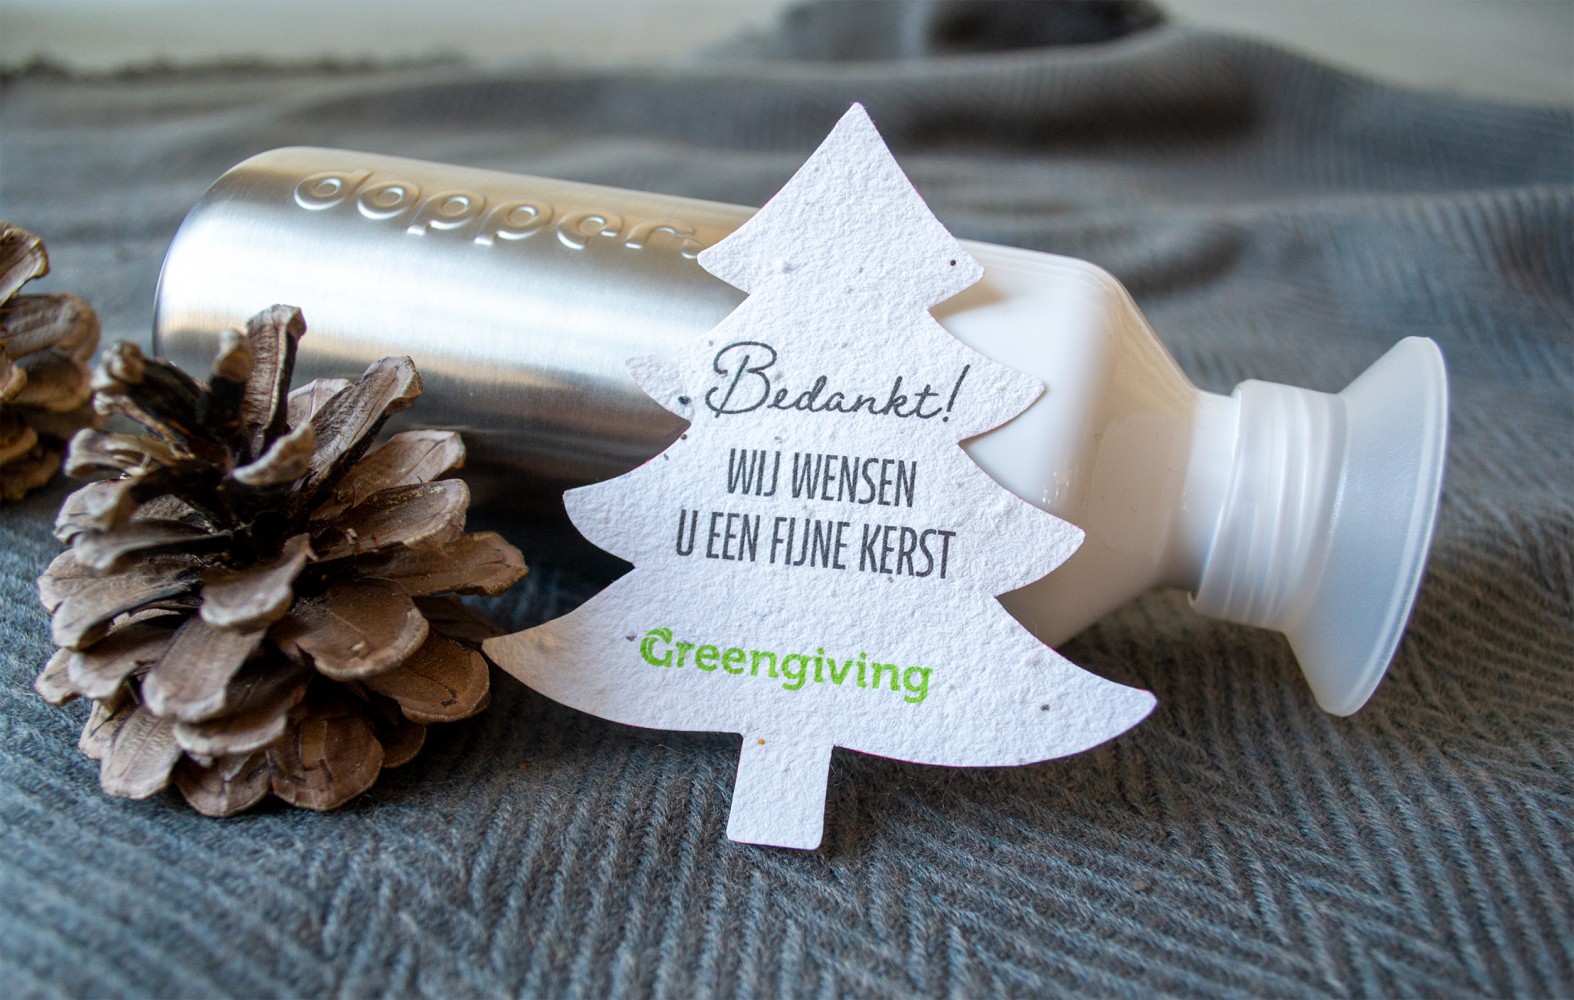 duurzame met originele geschenken - Greengiving.nl